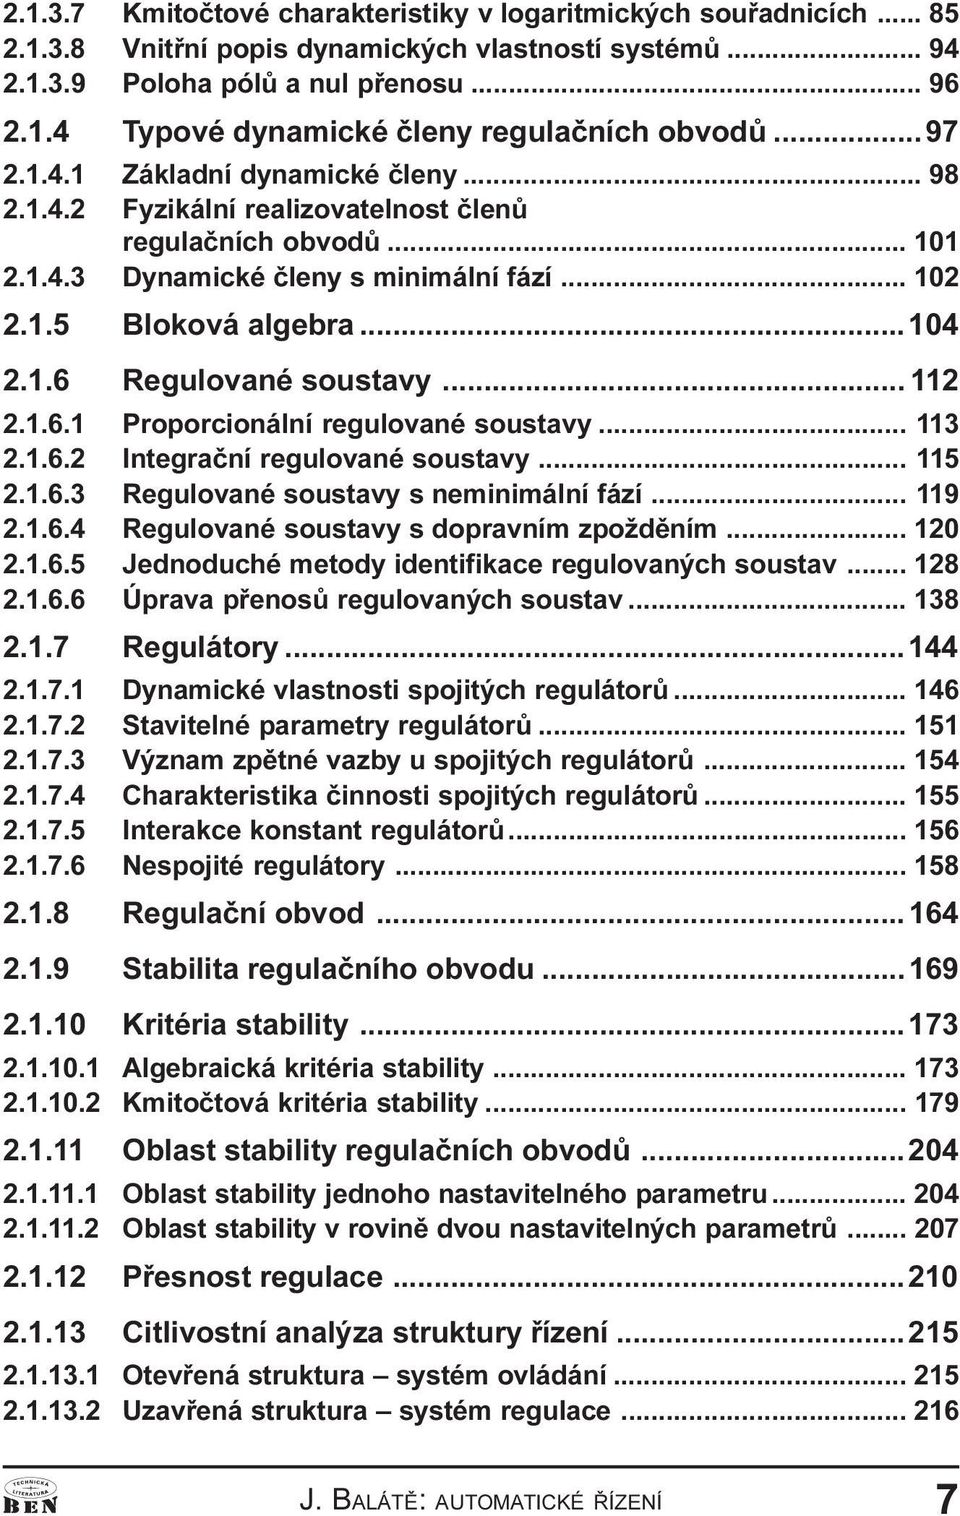 Regulované soustavy 112 2 1 6 1 Proporcionální regulované soustavy 113 2 1 6 2 Integraèní regulované soustavy 115 2 1 6 3 Regulované soustavy s neminimální fází 119 2 1 6 4 Regulované soustavy s